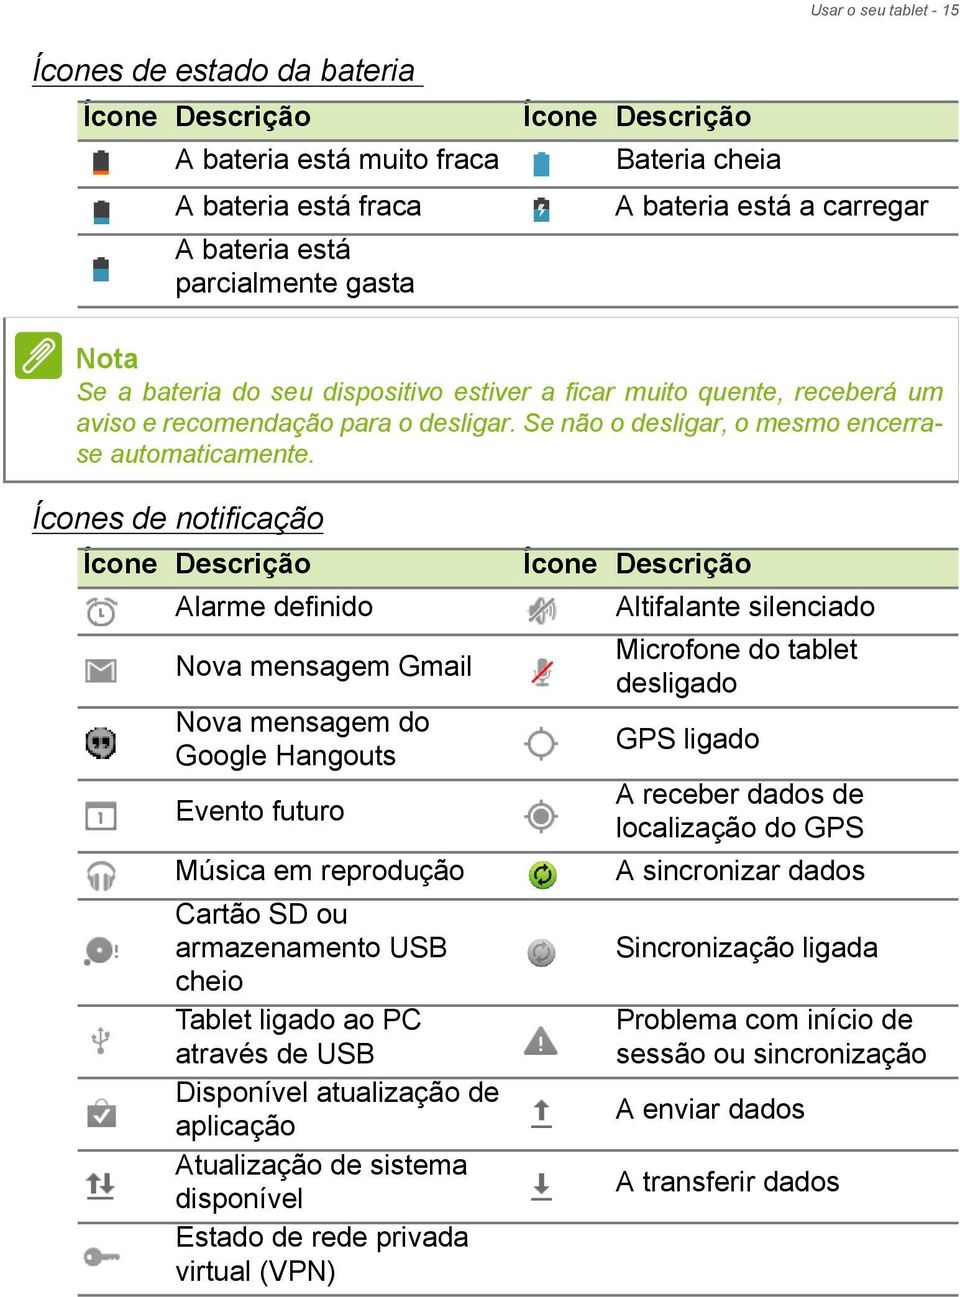 Ícones de notificação Ícone Descrição Alarme definido Nova mensagem Gmail Nova mensagem do Google Hangouts Evento futuro Música em reprodução Cartão SD ou armazenamento USB cheio Tablet ligado ao PC